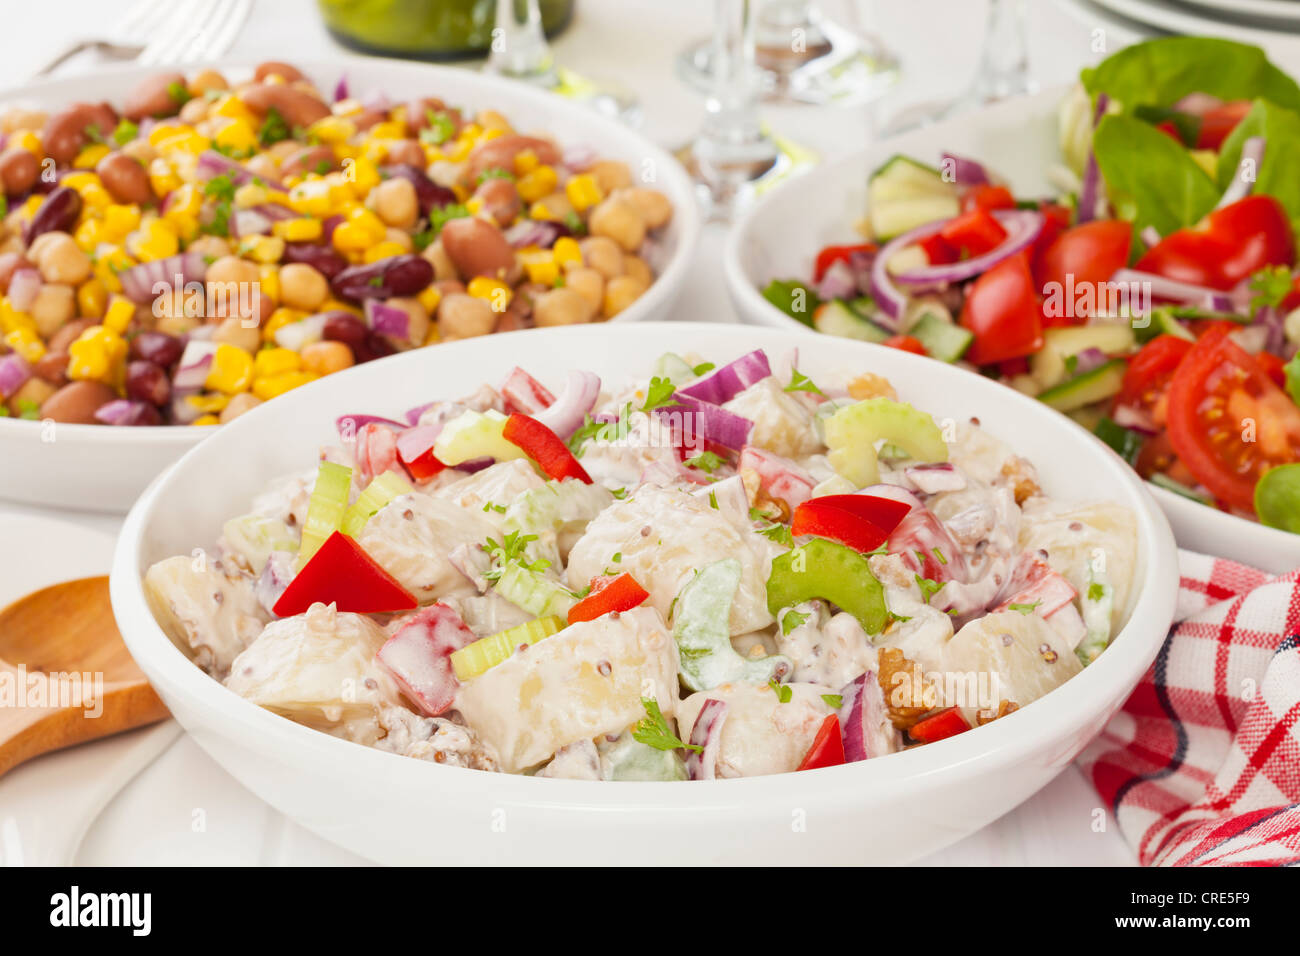 Un assortiment de salades sur une table de buffet Banque D'Images